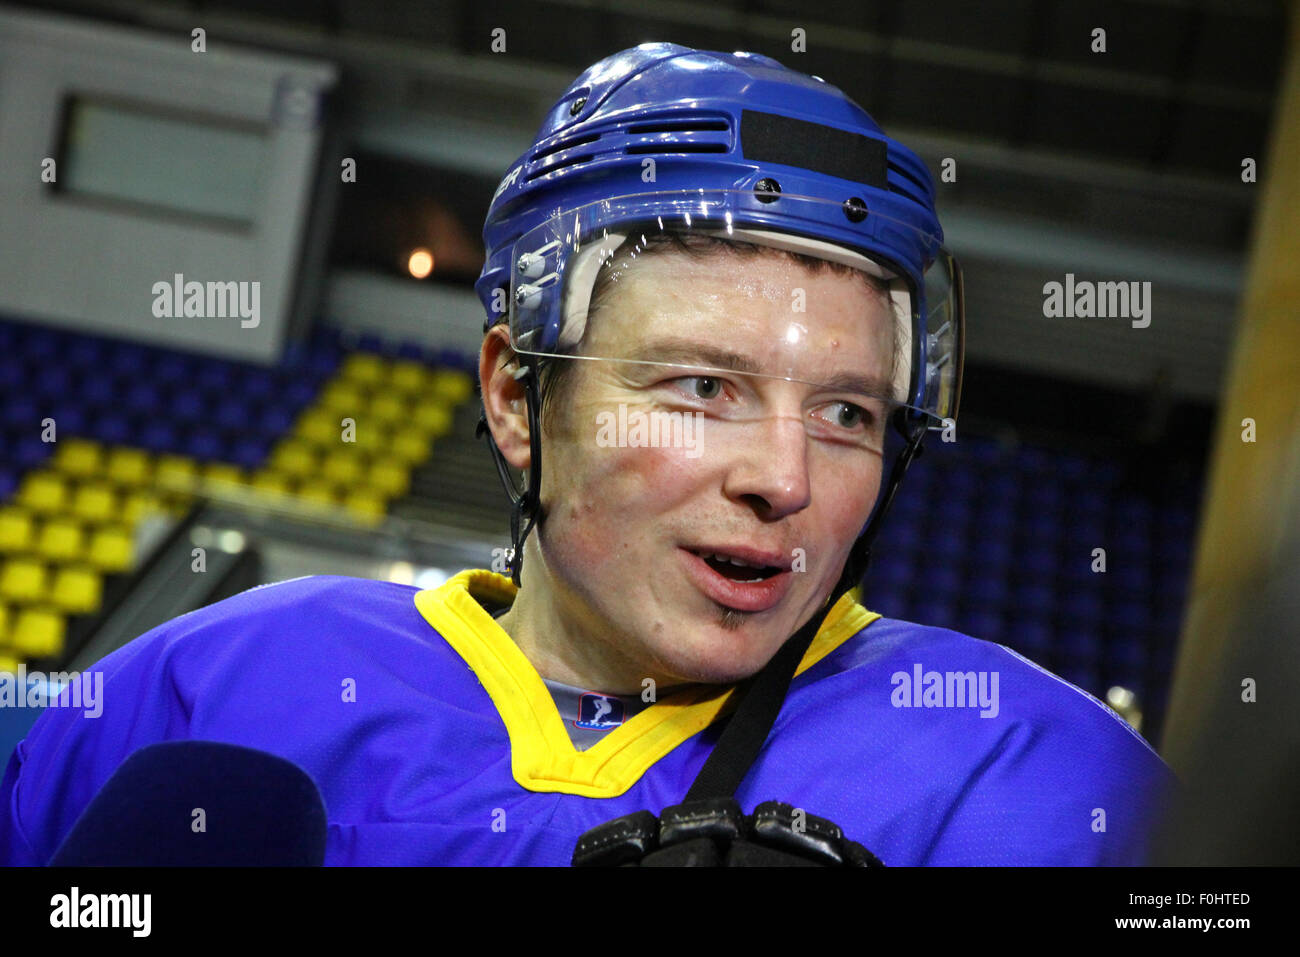 Kiev, UKRAINE - le 11 novembre 2012 : Le joueur de hockey sur glace Ruslan Fedotenko de l'Ukraine (joue aussi dans les Flyers de Philadelphie) donne une interview après le match de qualification pré-Olympique contre la Pologne le 11 novembre 2012 à Kiev, Ukraine Banque D'Images